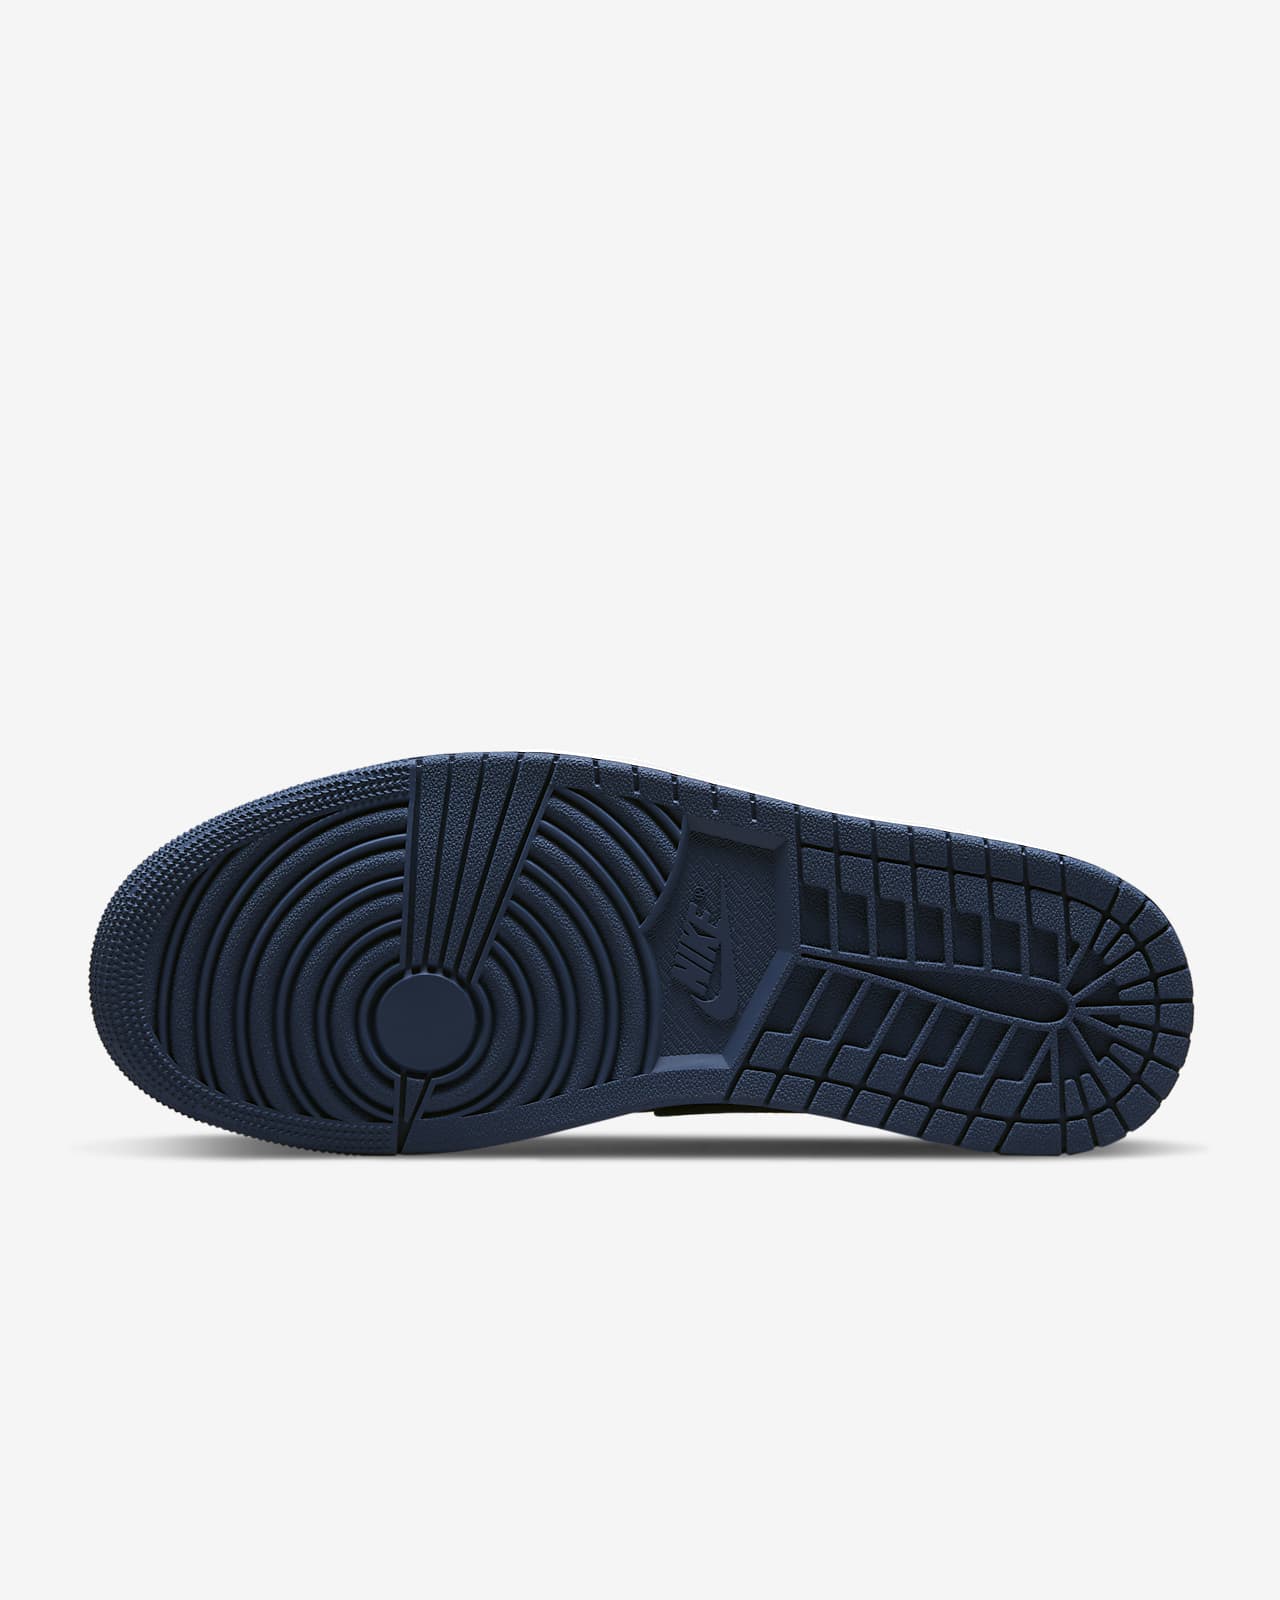 Air Jordan 1 Low OG Shoes. Nike PH